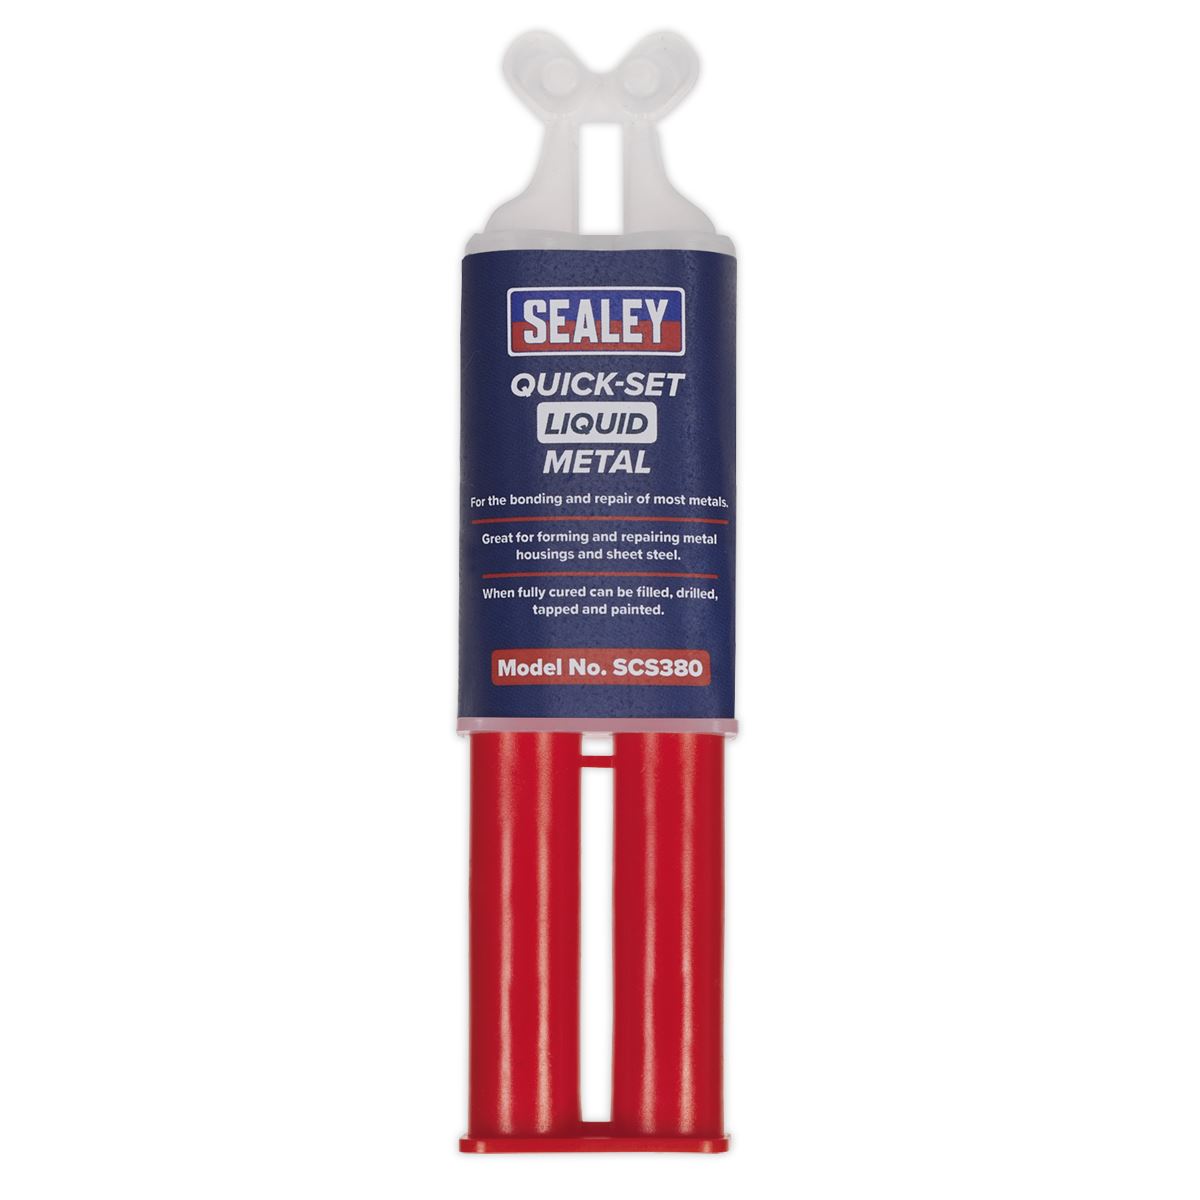 Sealey 25ml Quick Set Liquid Metal Repair Syringe Repairing Bond Glue